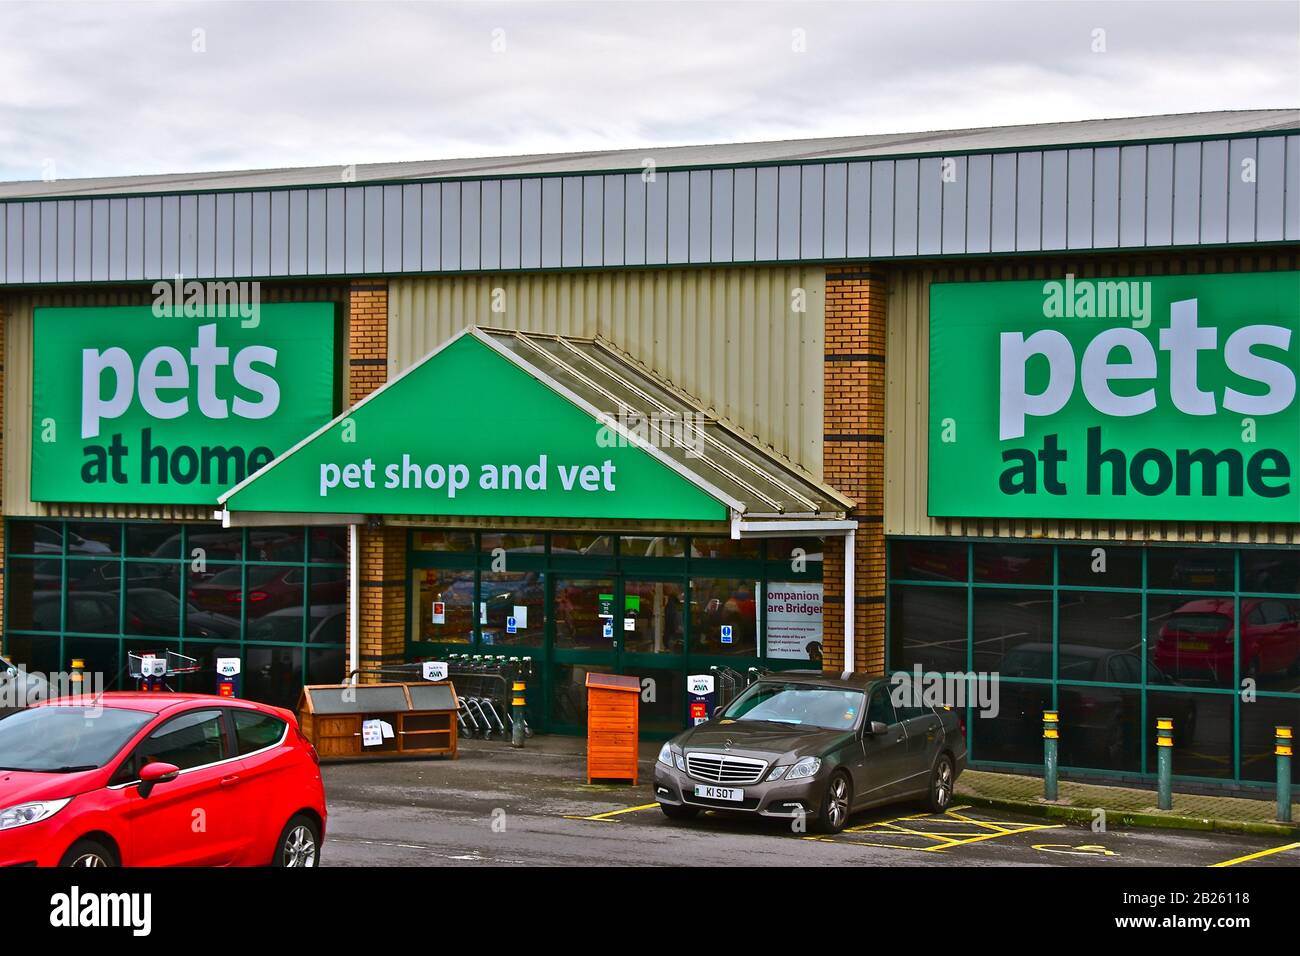 Le magasin de vente au détail animaux domestiques de Bridgend Retail Park vend une large gamme de produits pour animaux de compagnie et contient également un service vétérinaire. Banque D'Images